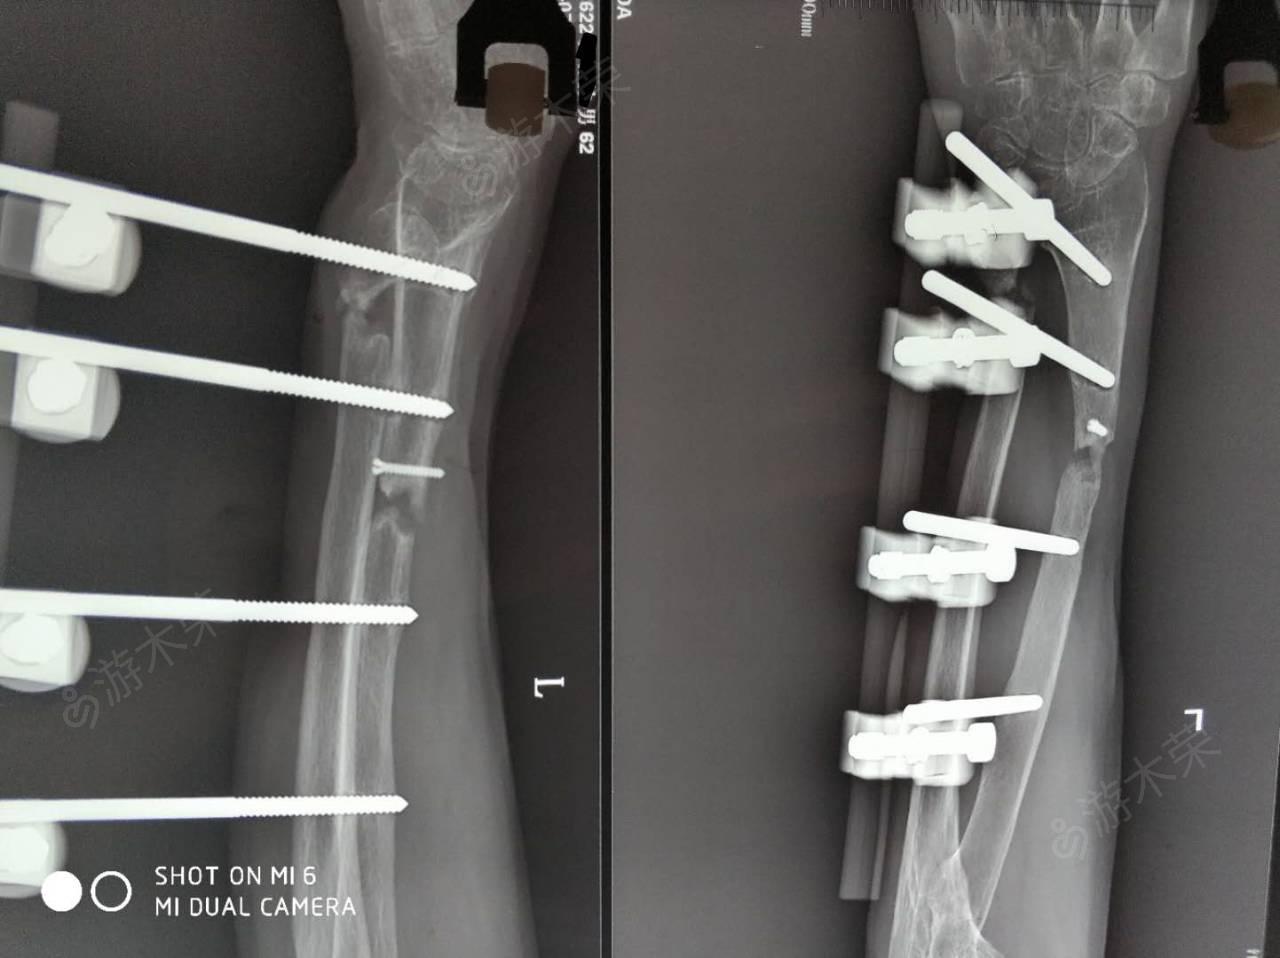 逆行髓内钉微创治疗32C2型股骨干骨折 - 微医（挂号网）